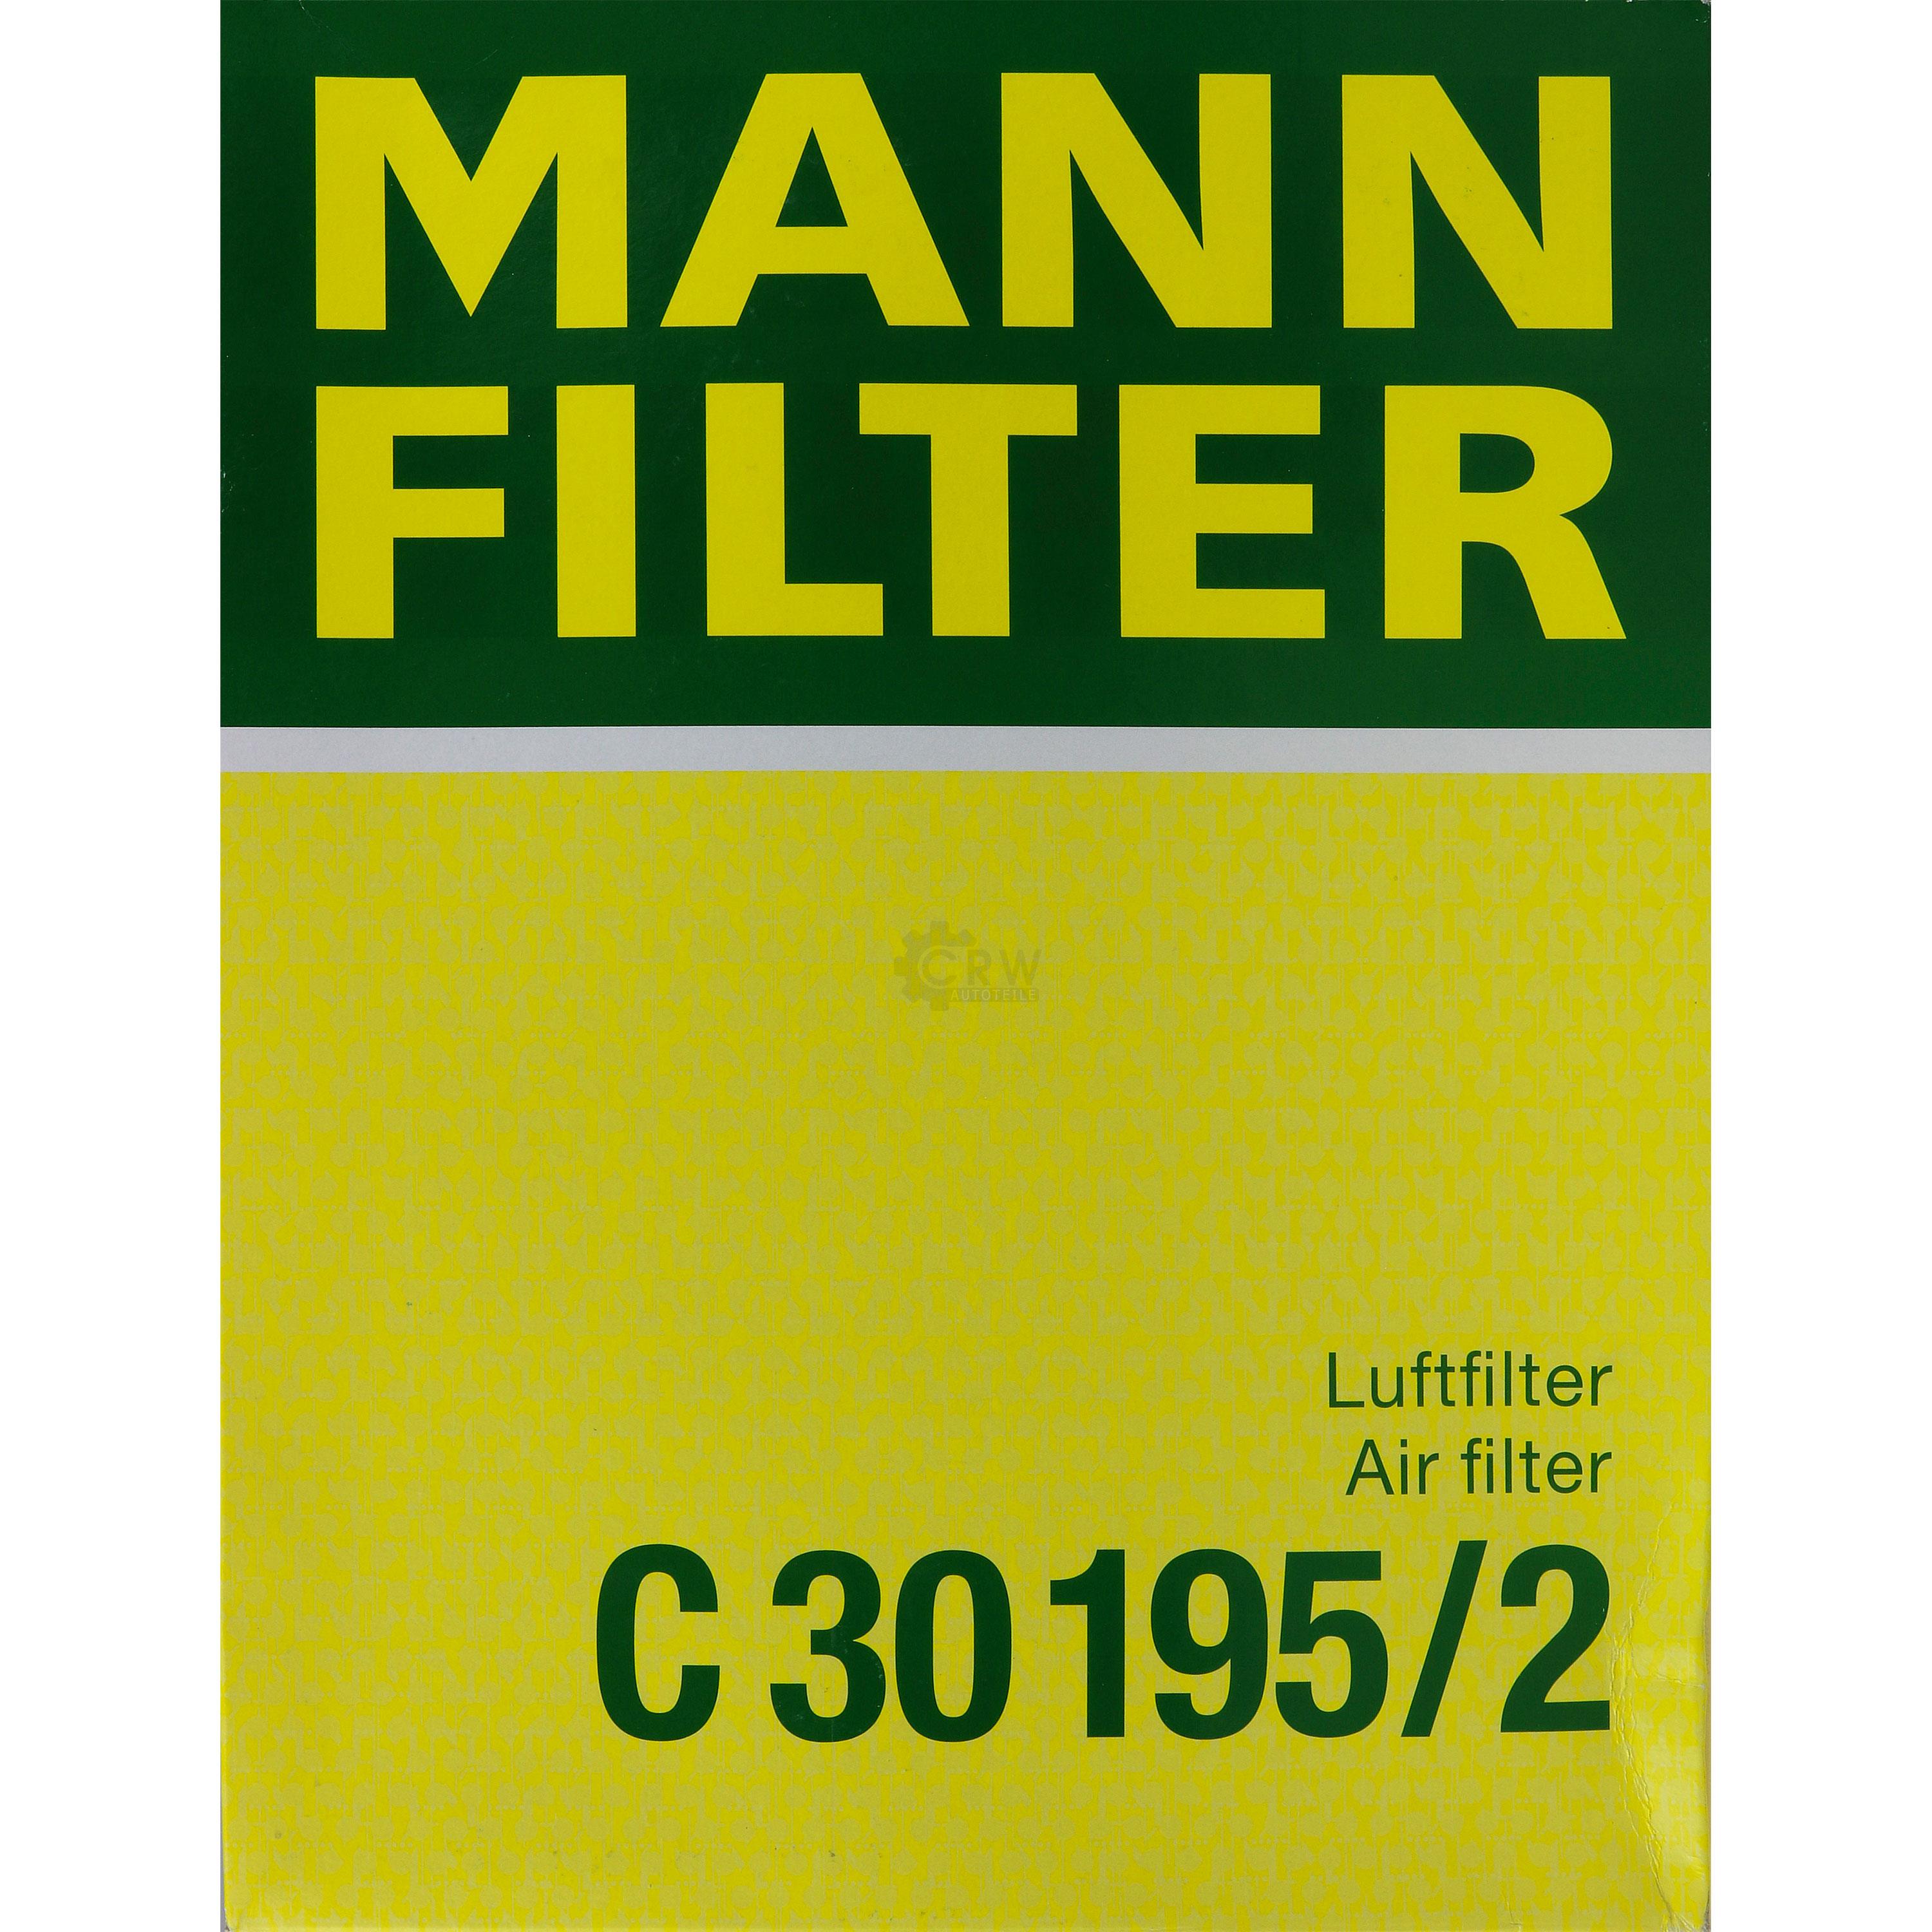 MANN-FILTER Luftfilter für Mercedes-Benz C-Klasse W202 S202 C208 200 320